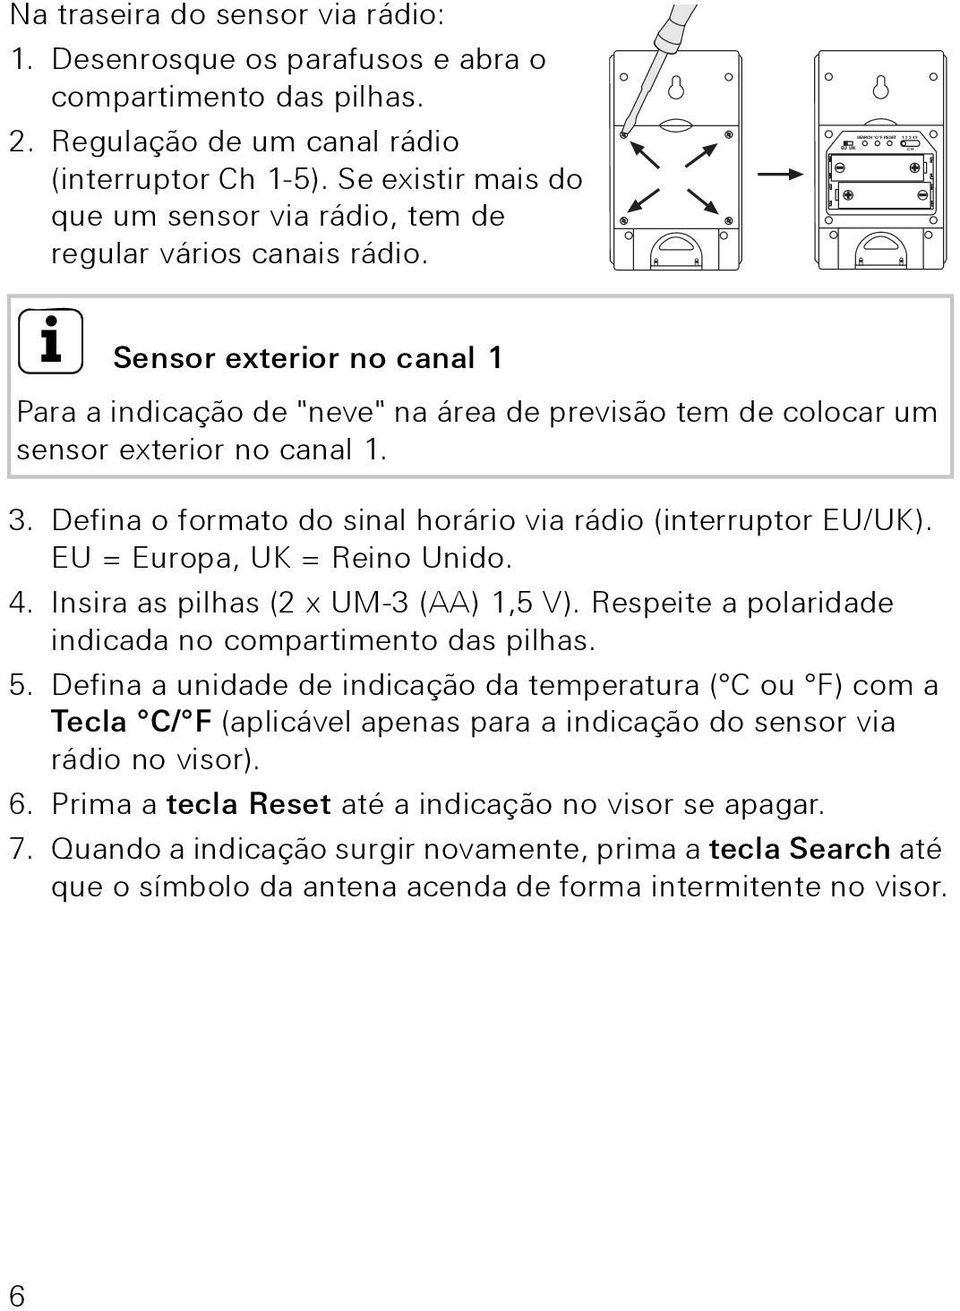 i Sensor exterior no canal 1 Para a indicação de "neve" na área de previsão tem de colocar um sensor exterior no canal 1. 3. Defina o formato do sinal horário via rádio (interruptor EU/UK).